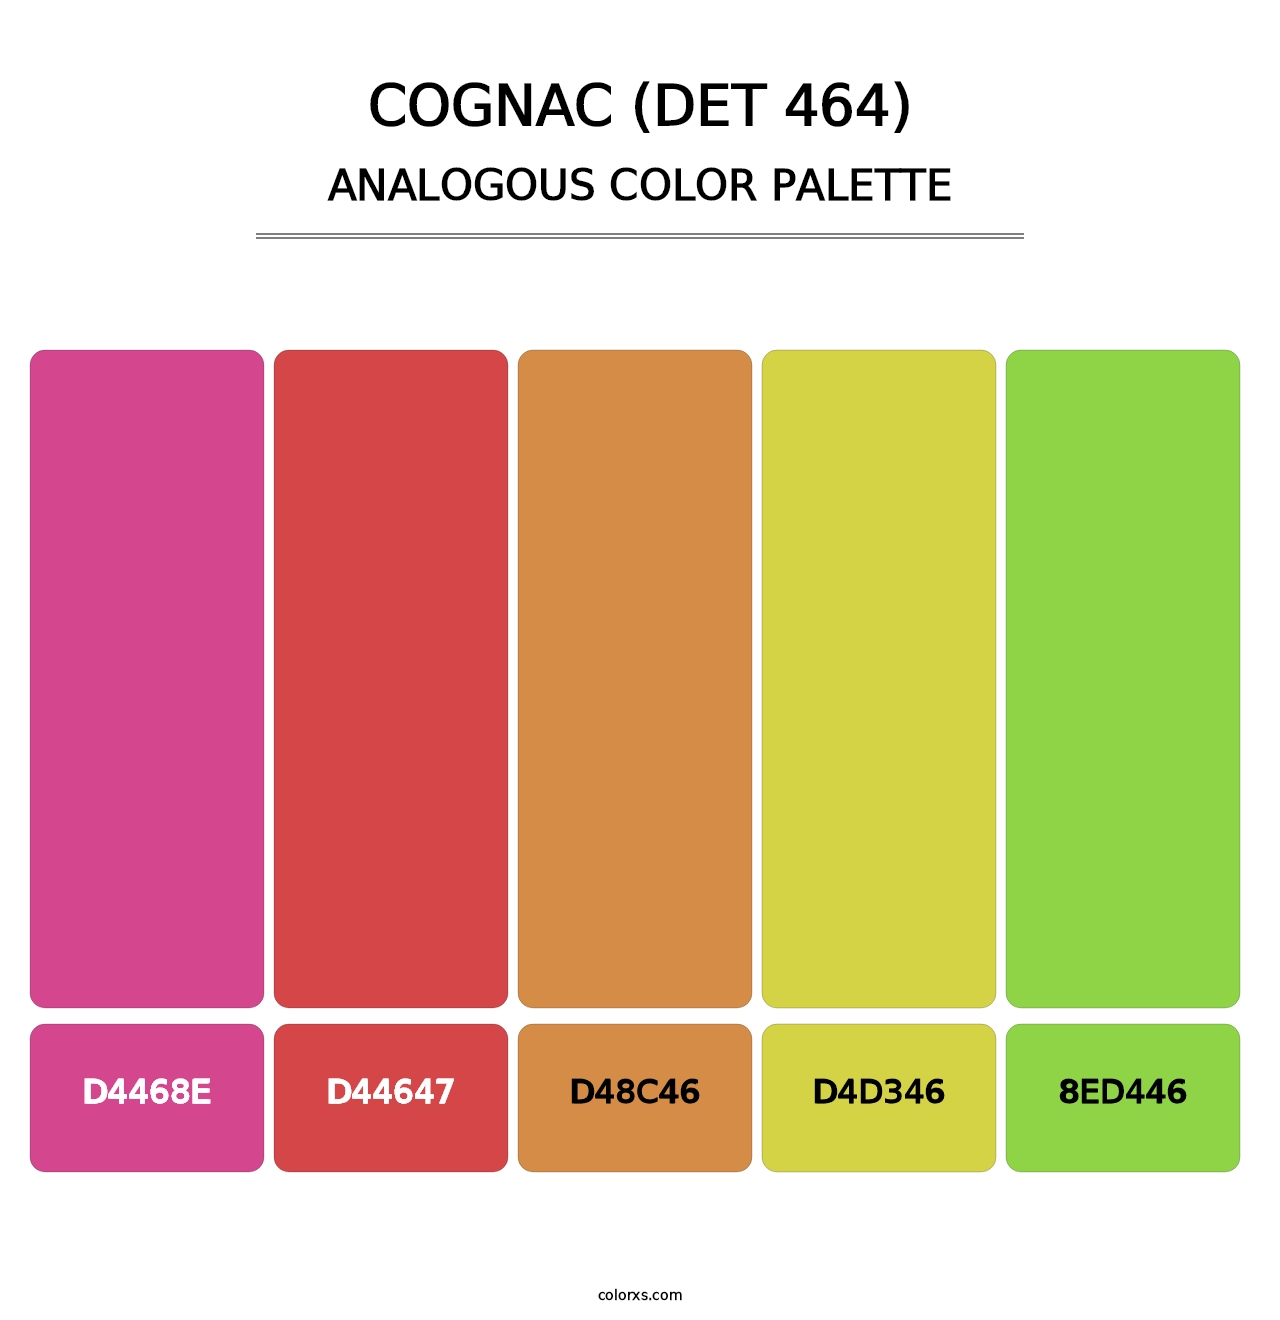 Cognac (DET 464) - Analogous Color Palette